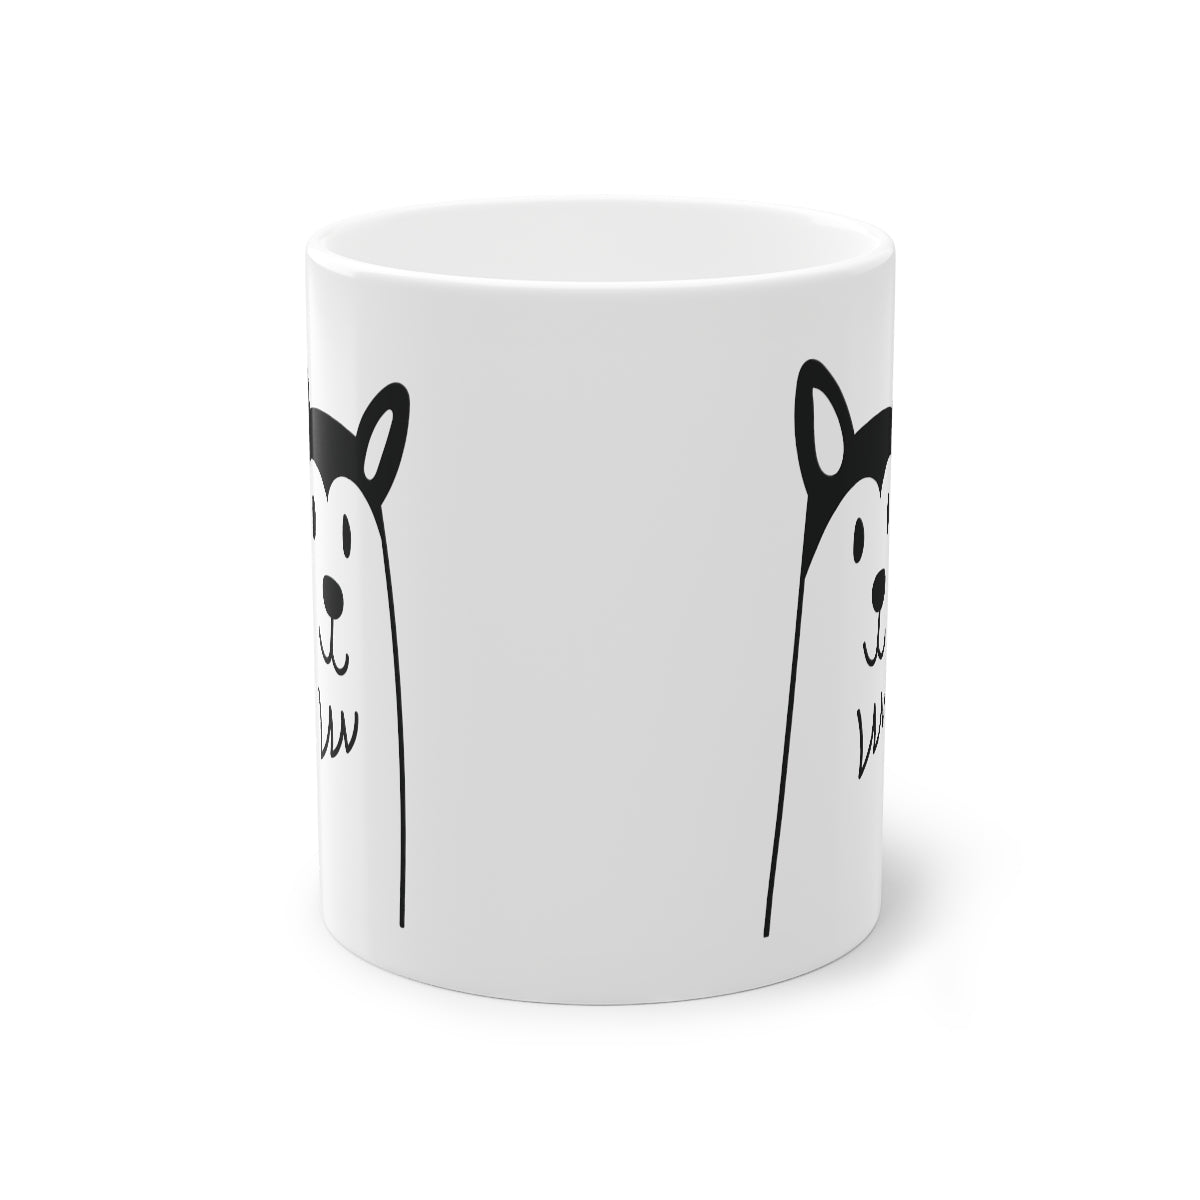 Cute dog Husky mug, white, 325 ml / 11 oz Coffee mug, tea mug for kids, children, puppies mug for dog lovers, dog owners